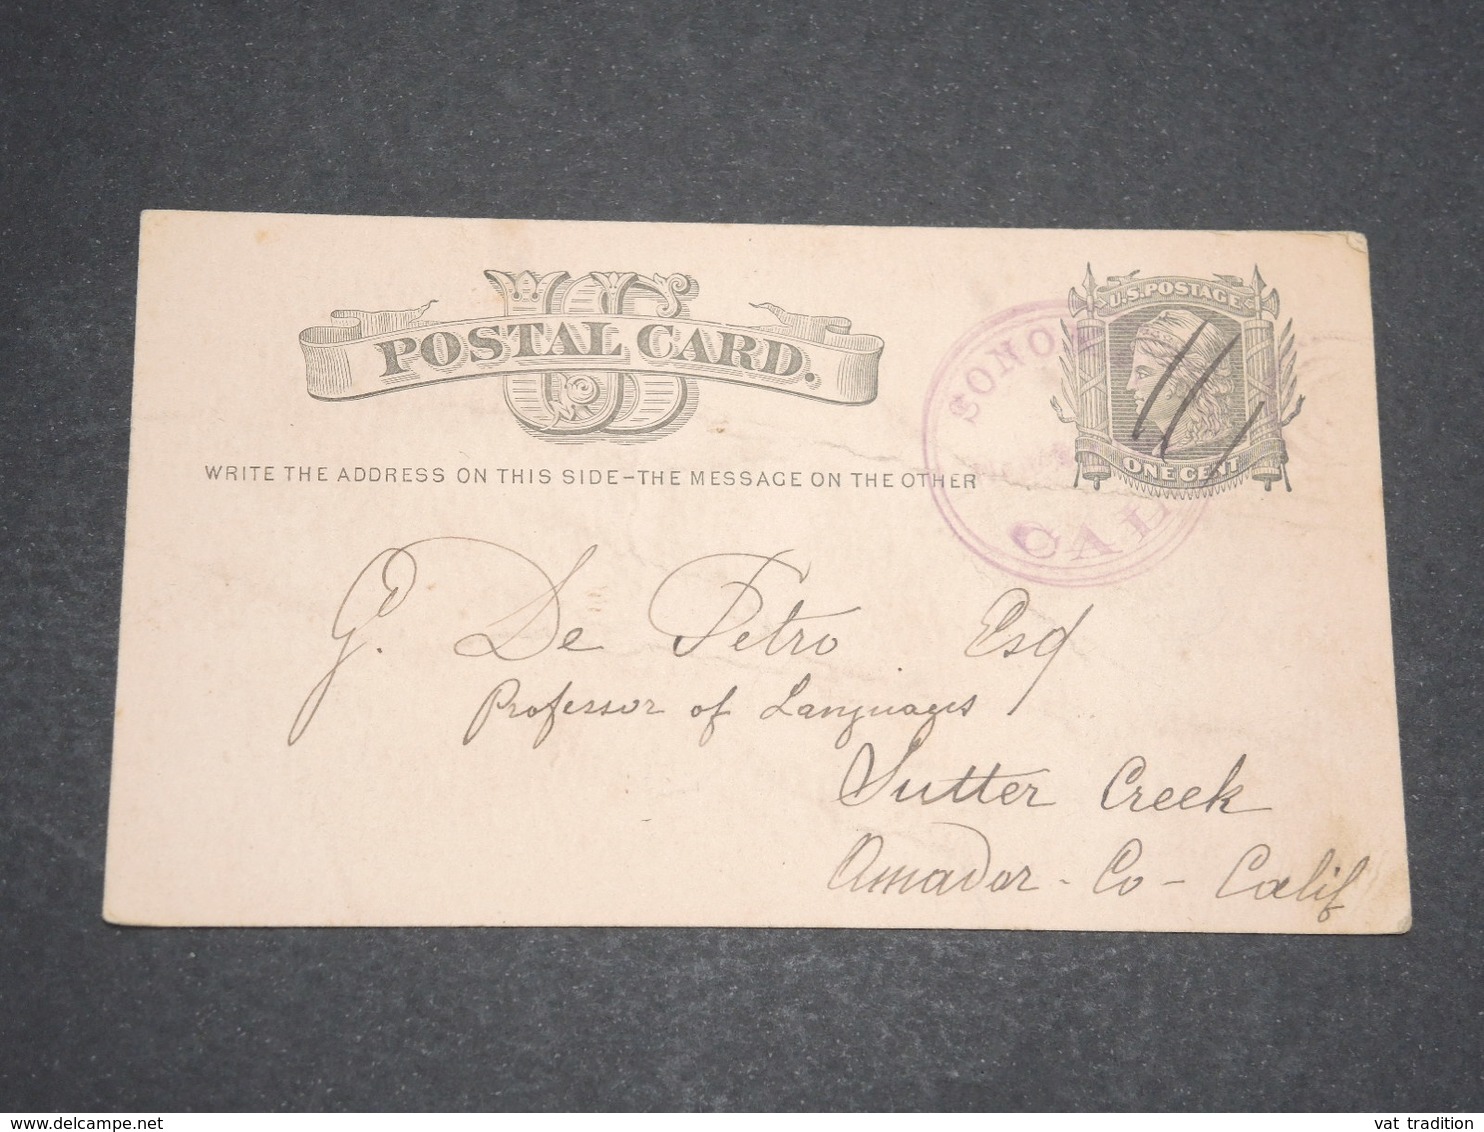 ETATS UNIS - Entier Postal Voyagé Vers Sutter Creek -  L 13618 - 1901-20